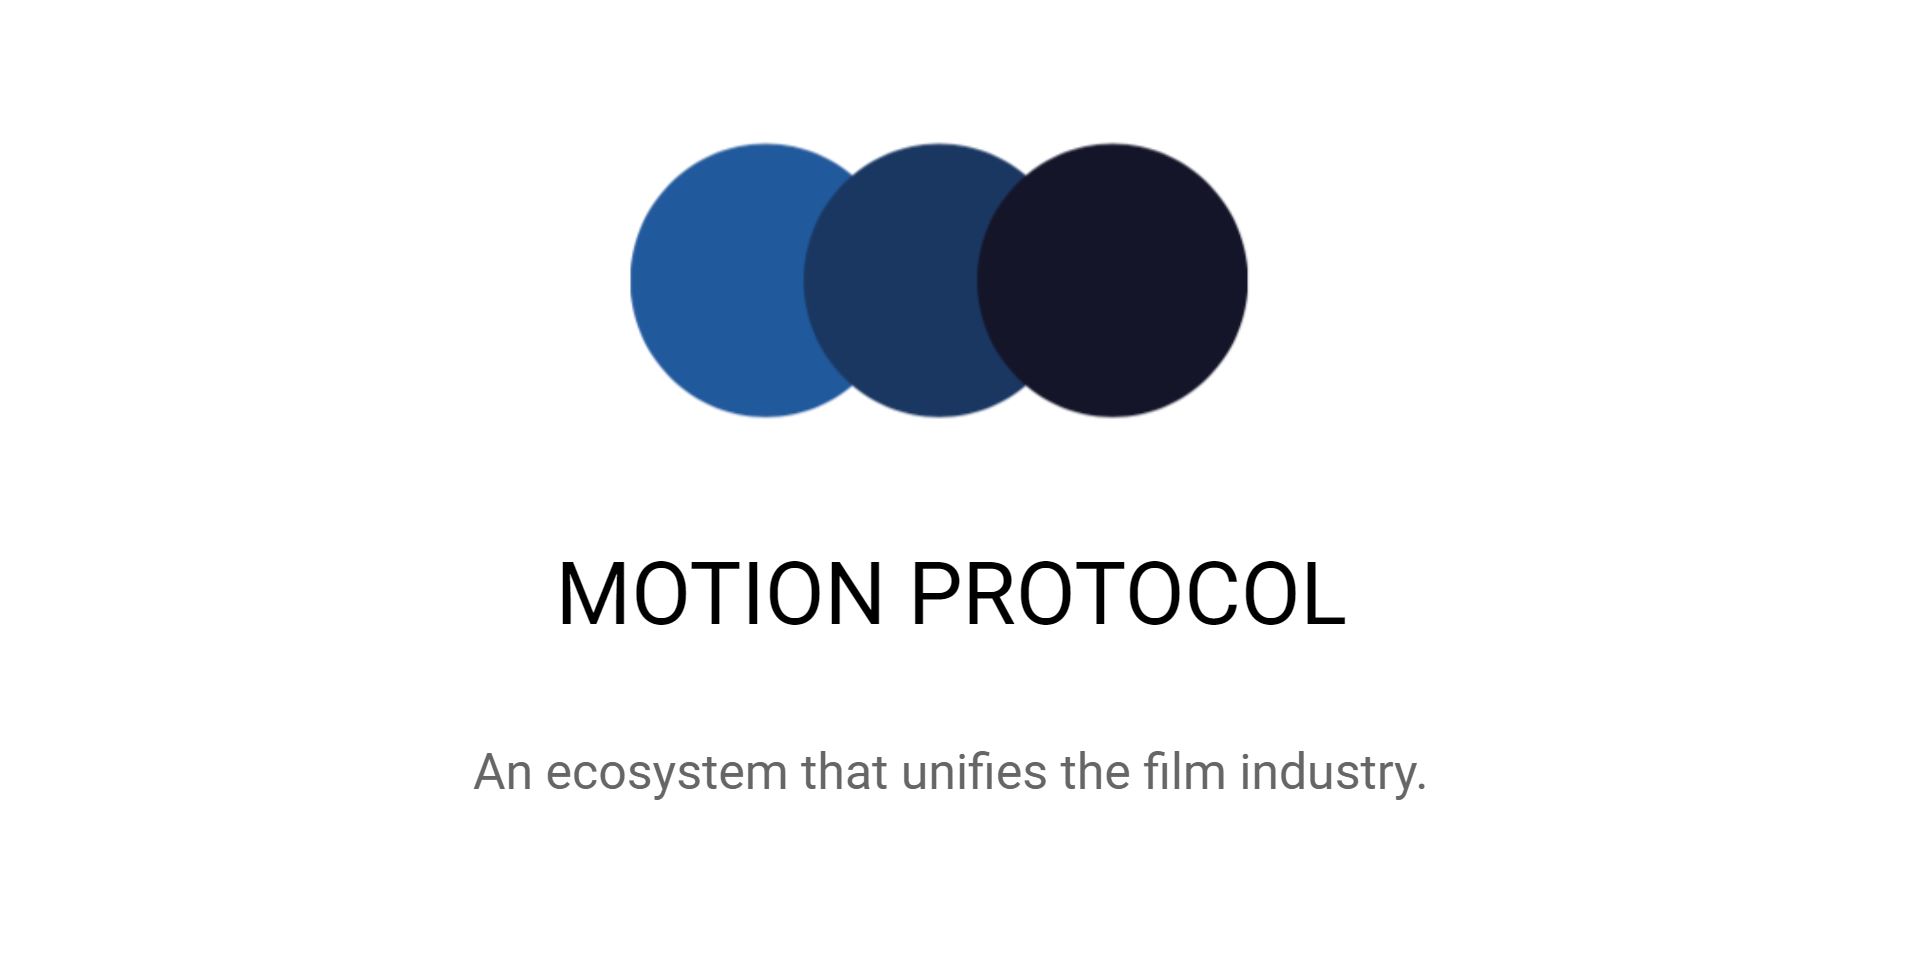 Die Blockchain trifft auf die Filmindustrie – Interview mit Florian Glatz (Motion Protocol)